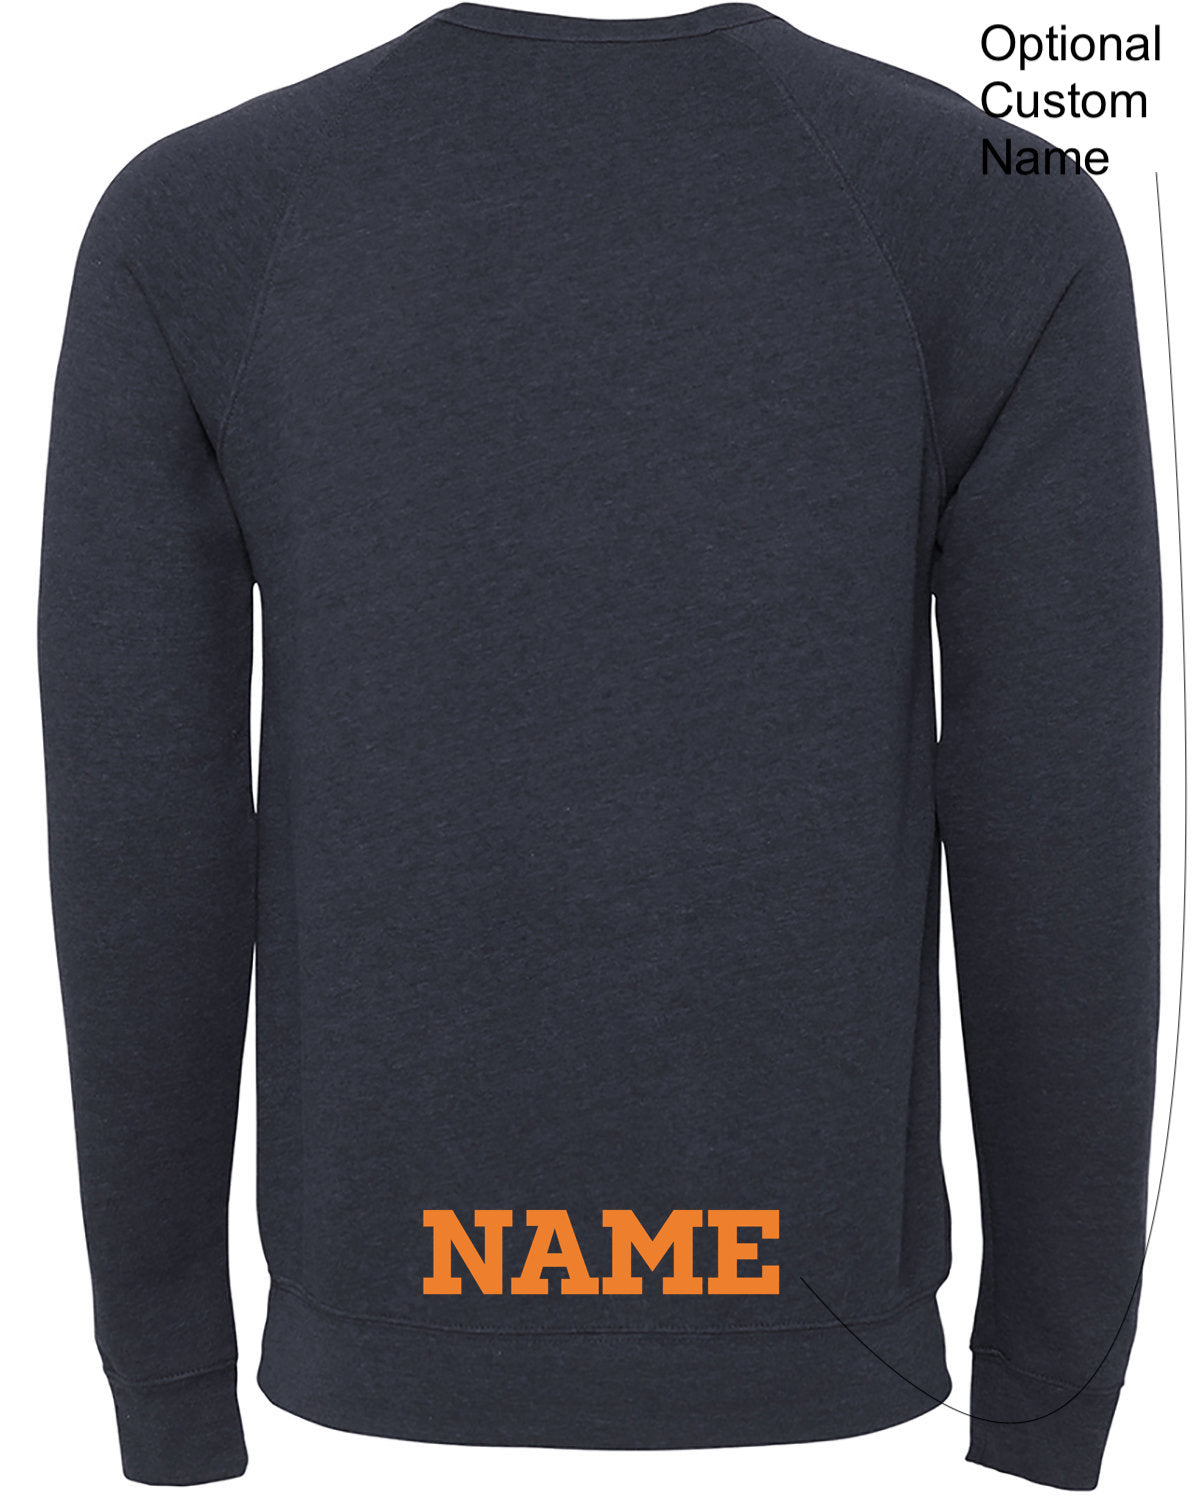 Walpole Lacrosse Adult (unisex) Sponge Fleece Crewneck Sweatshirt (3901)